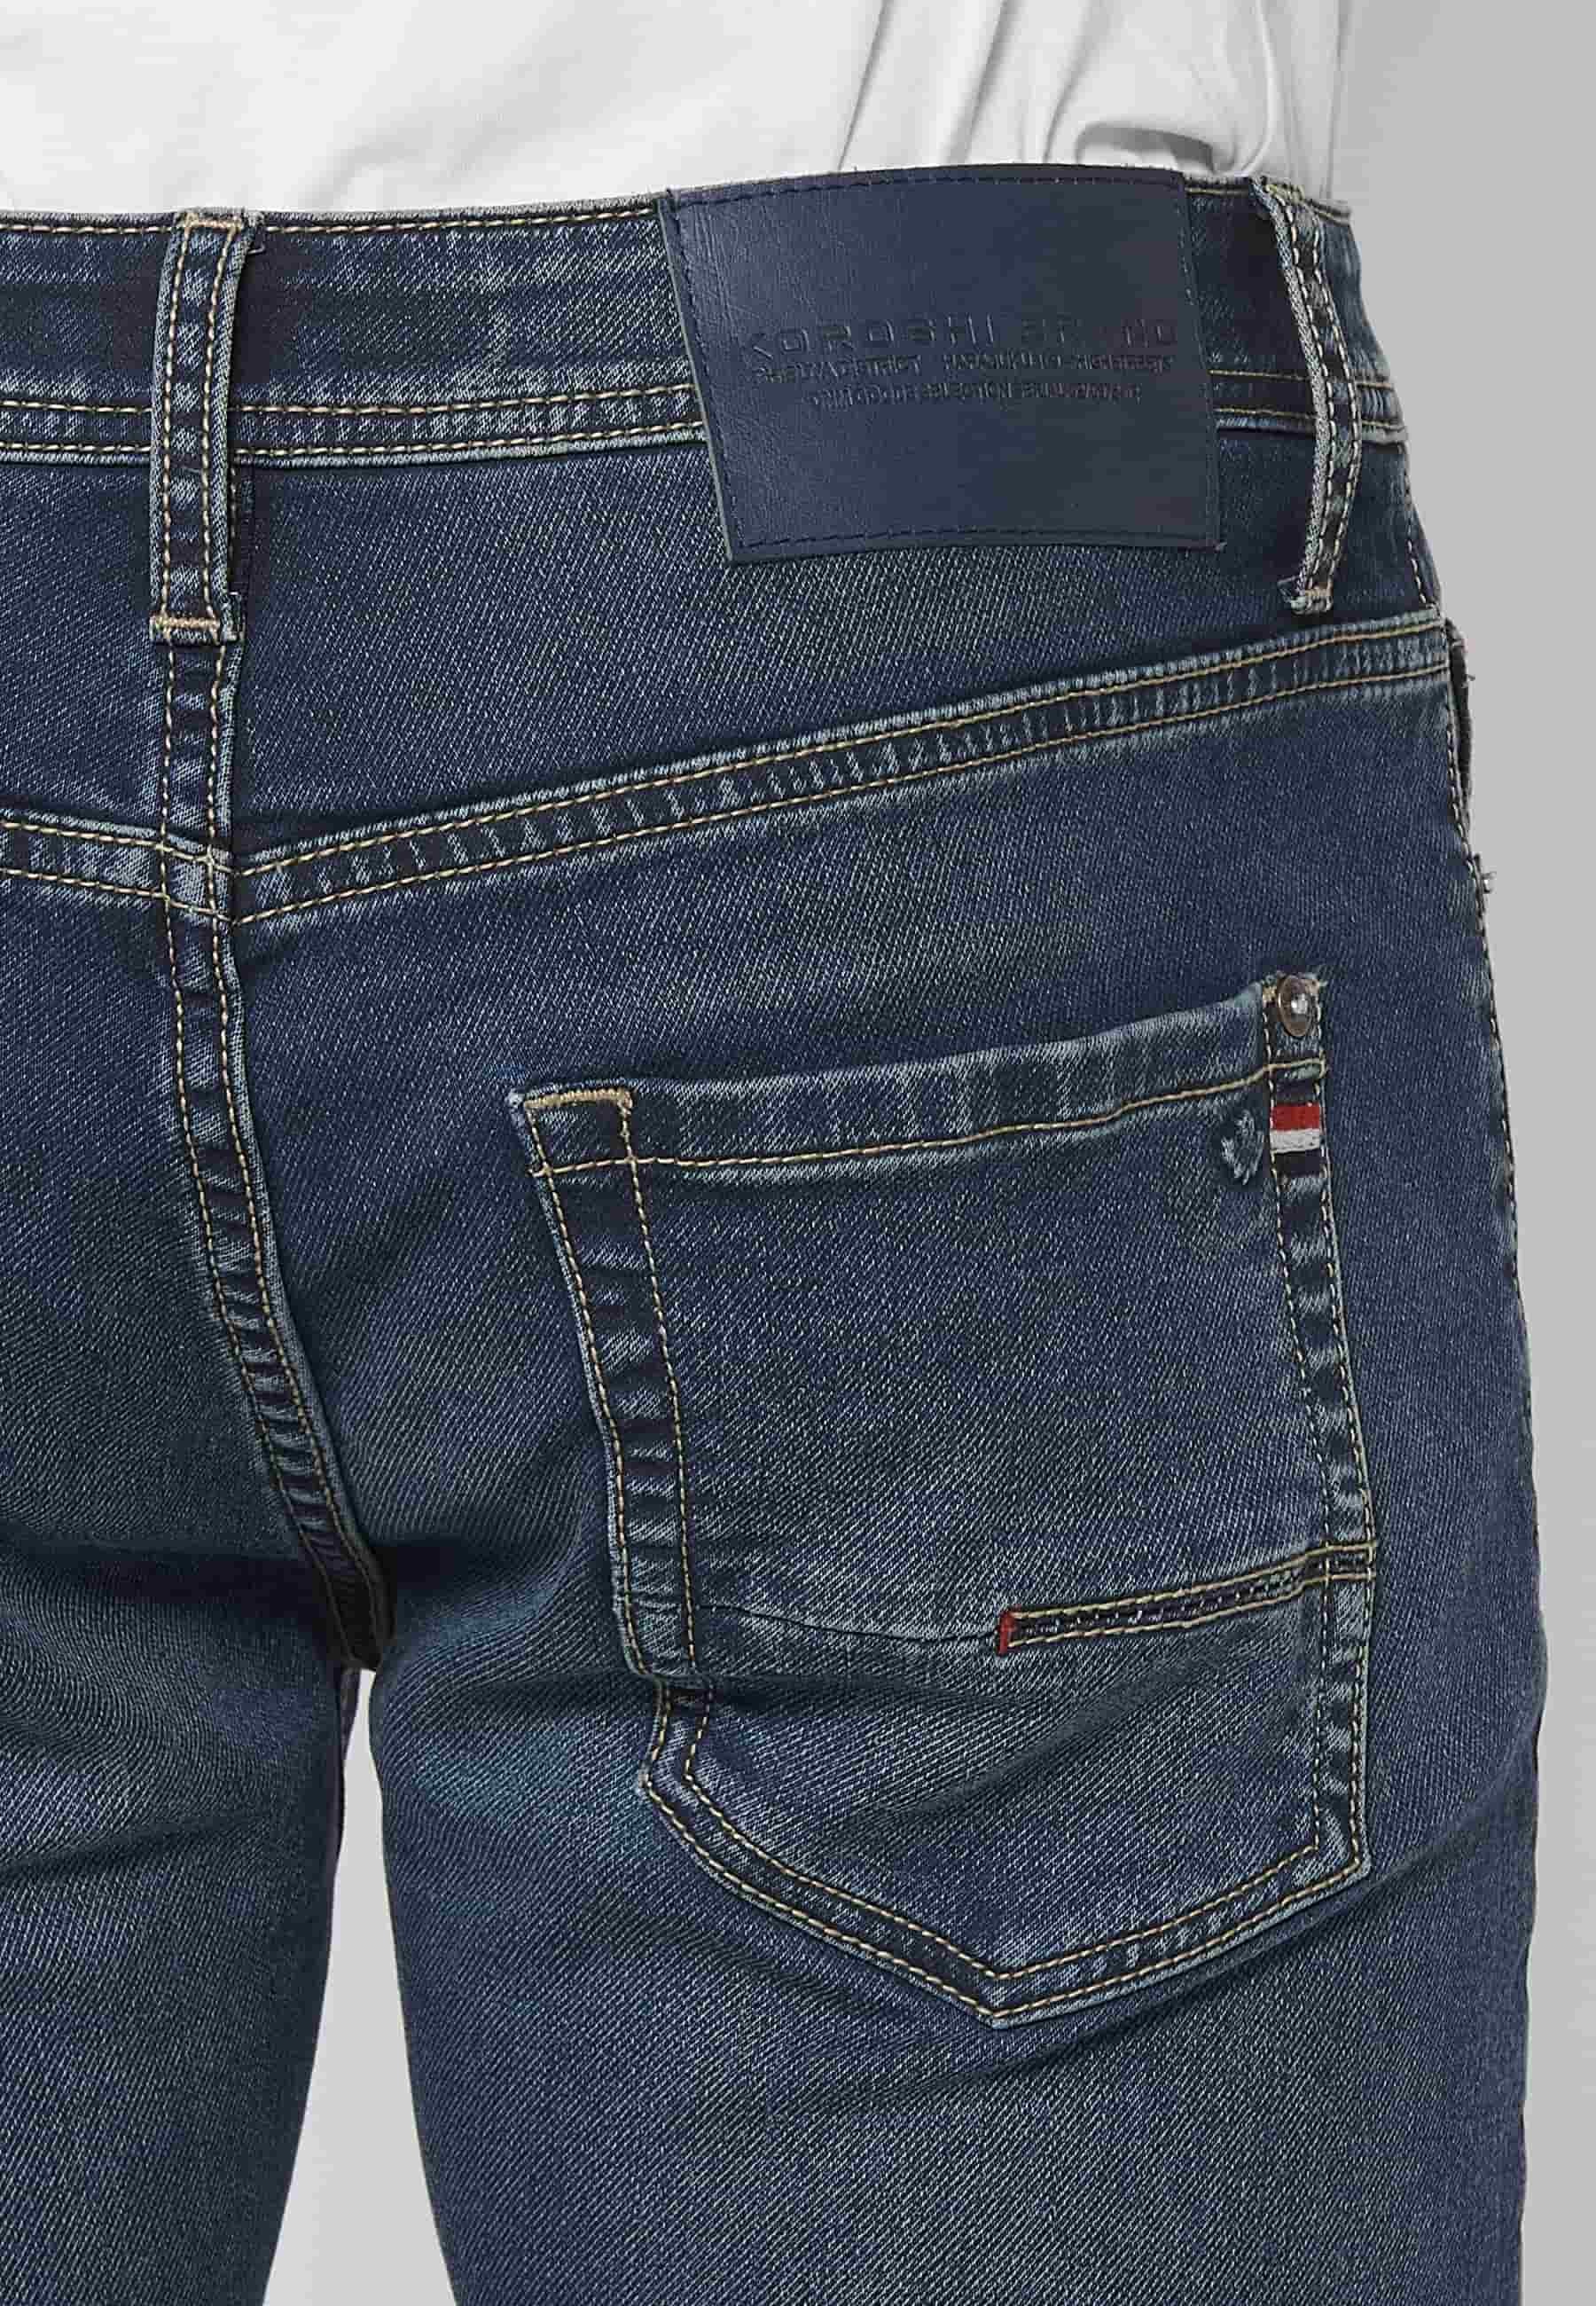 Lange Slim-Fit-Jeans mit Reißverschluss und Knopfverschluss vorne und fünf Taschen, eine blaue Tasche für Herren 8